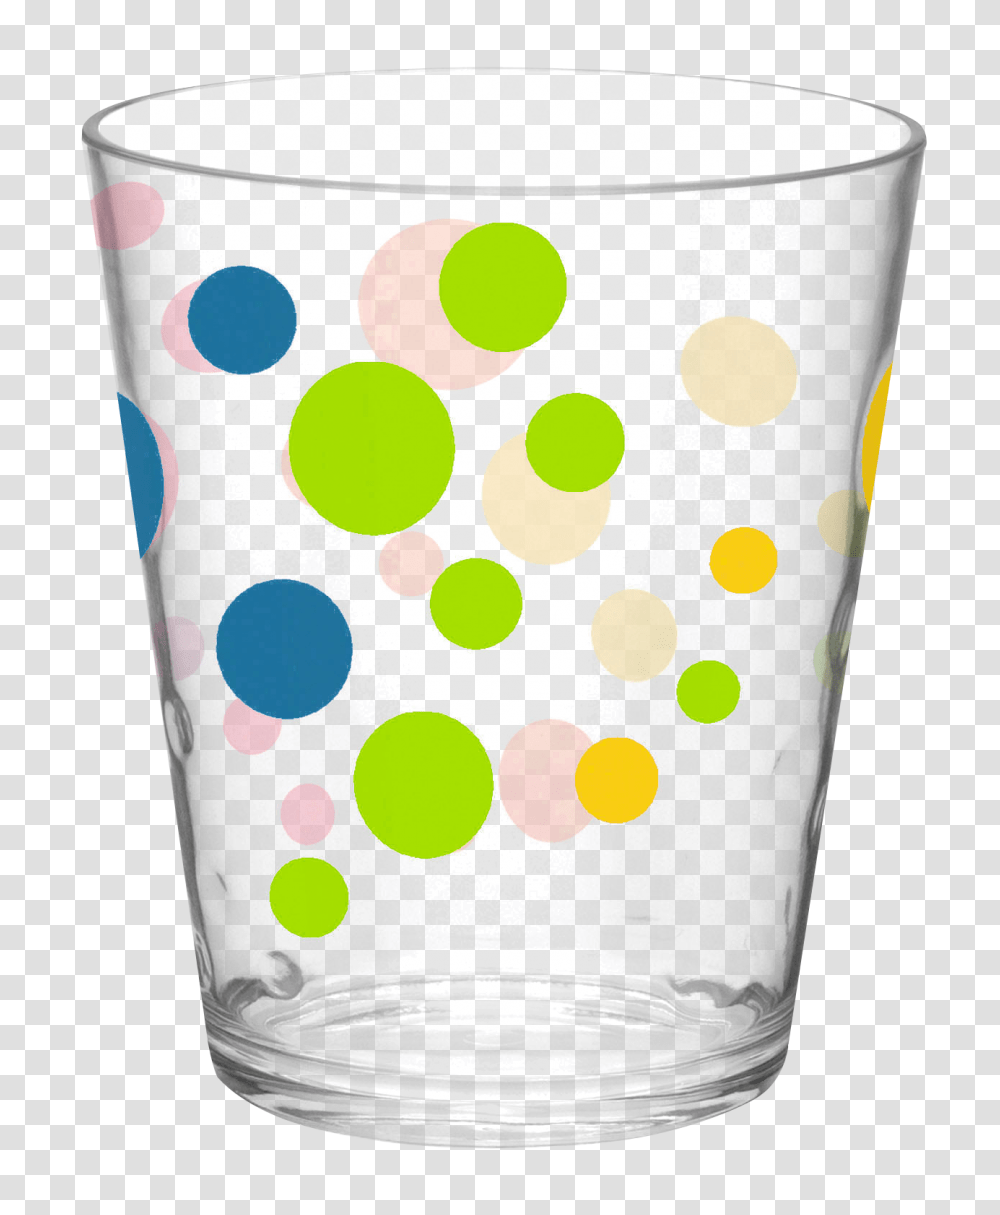 Glass Cup Image, Texture, Polka Dot, Aluminium Transparent Png